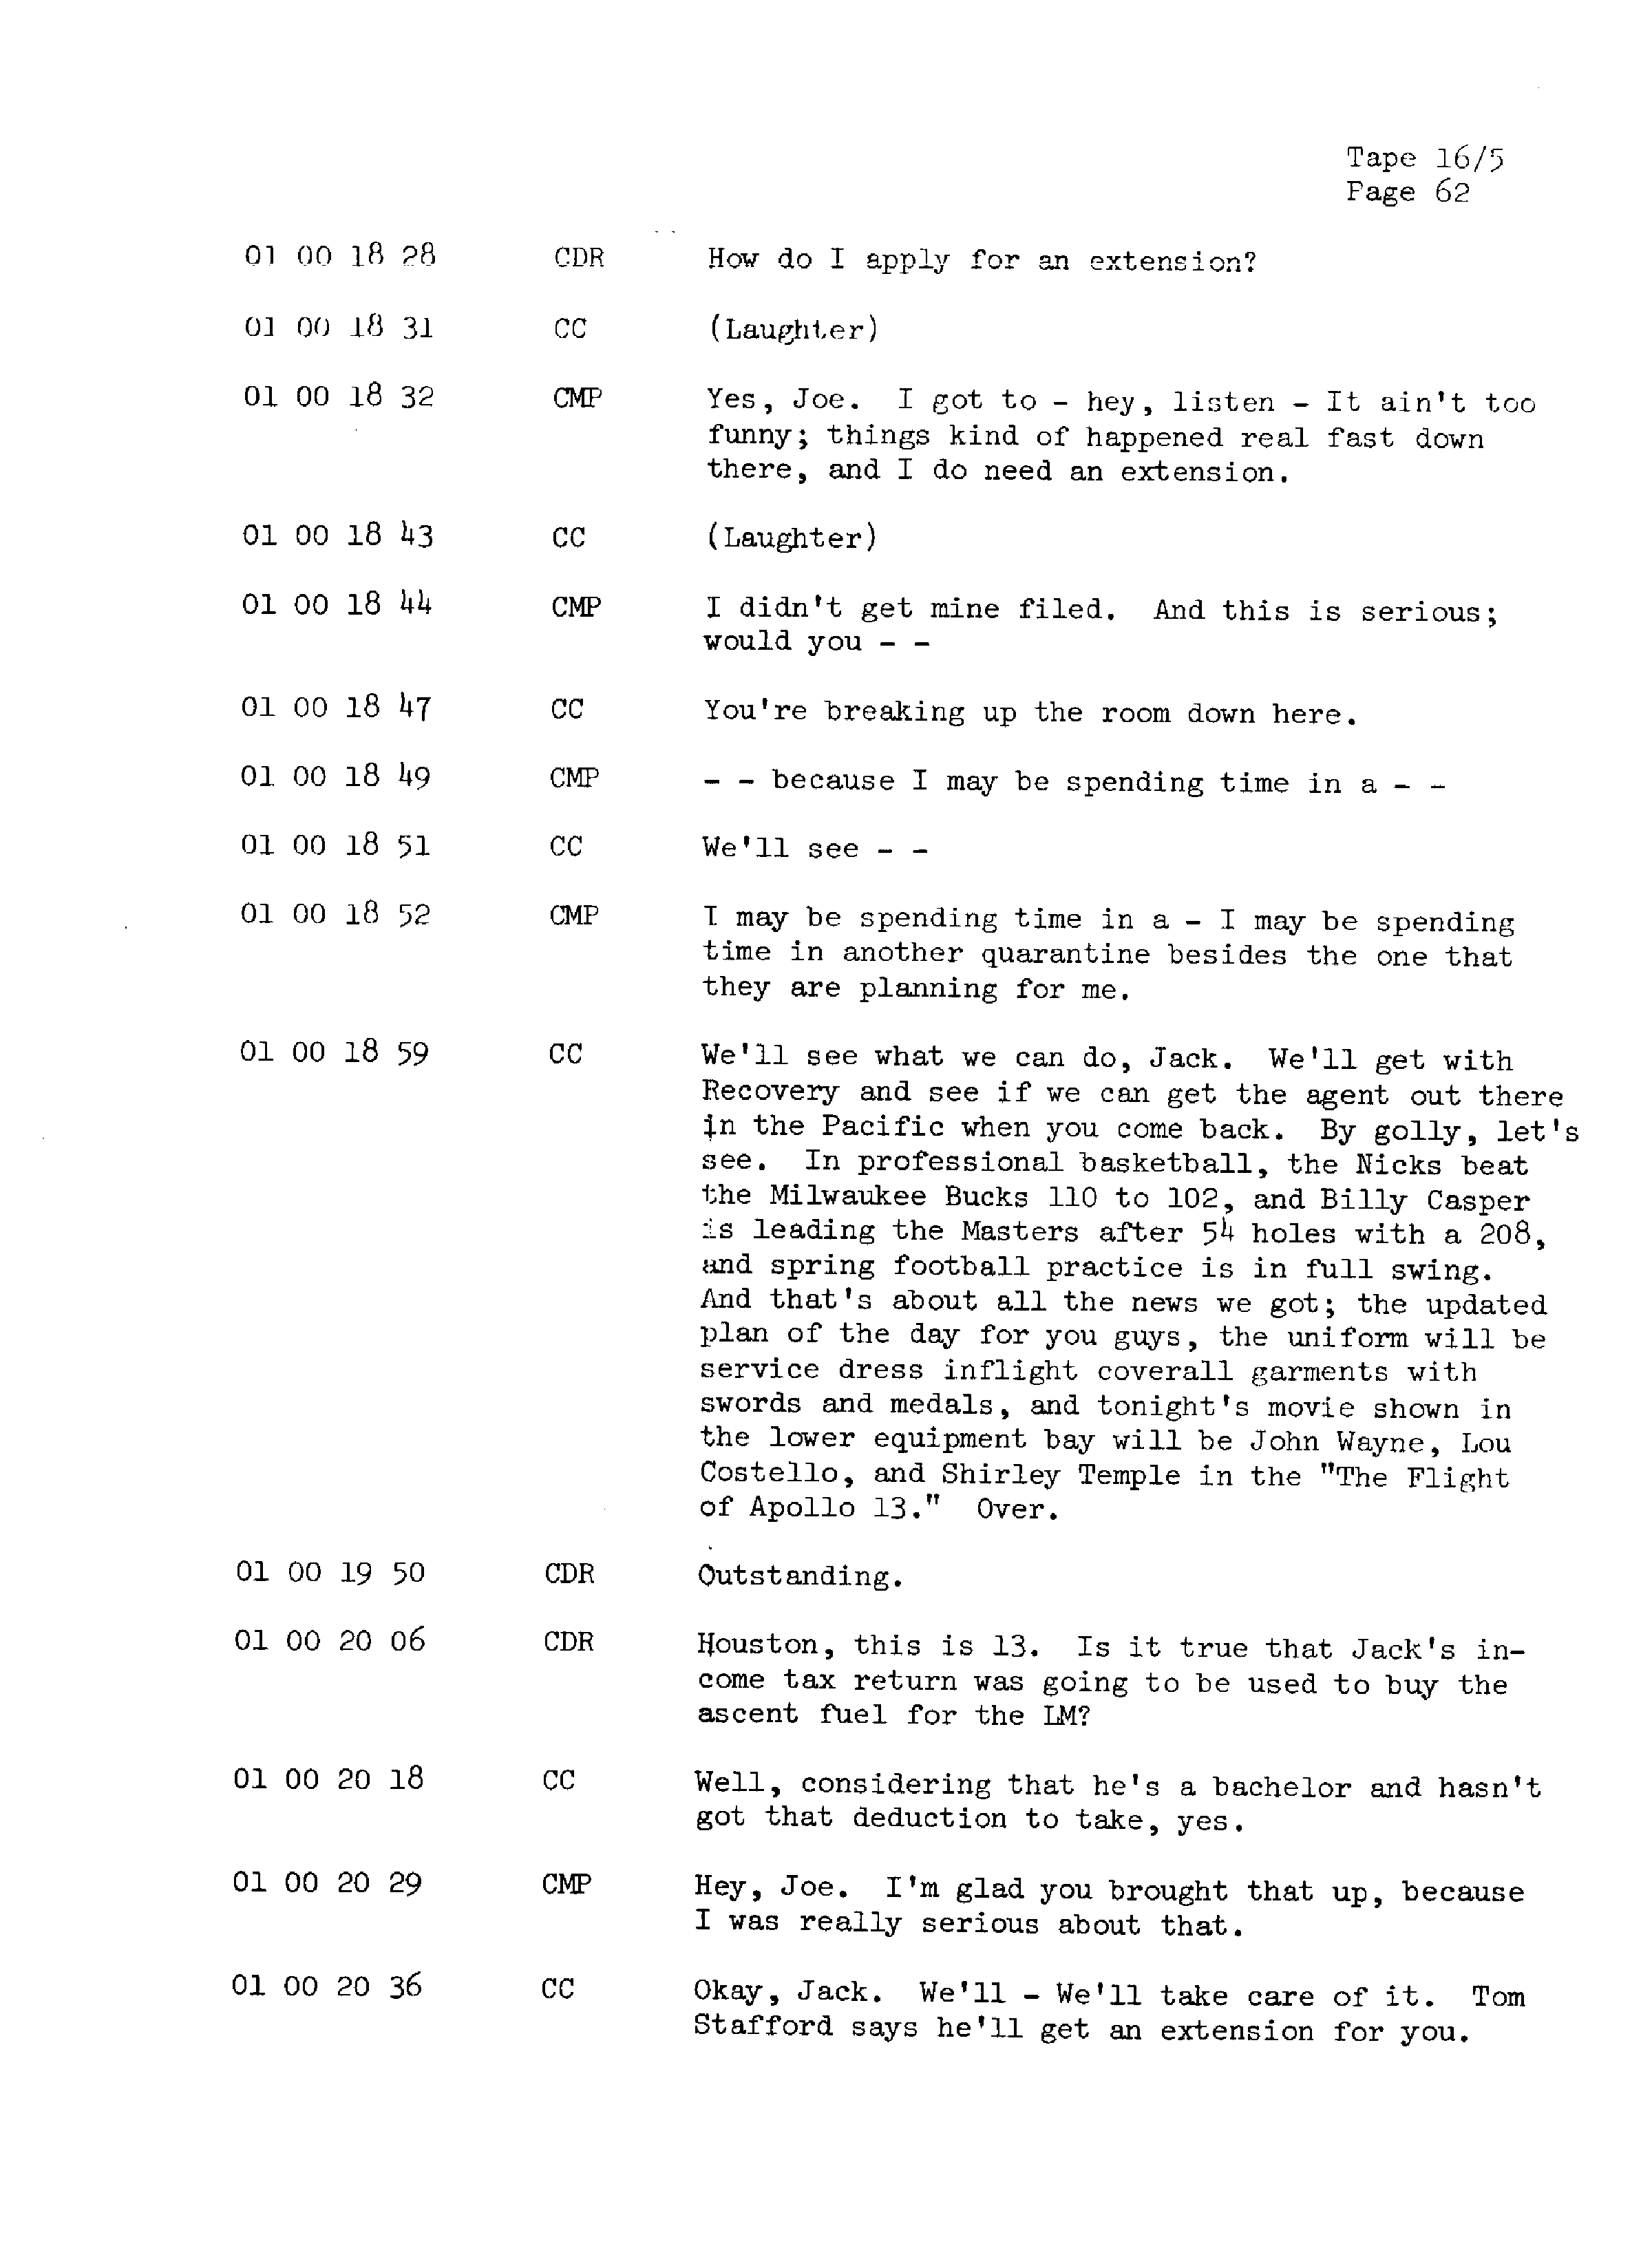 Page 69 of Apollo 13’s original transcript